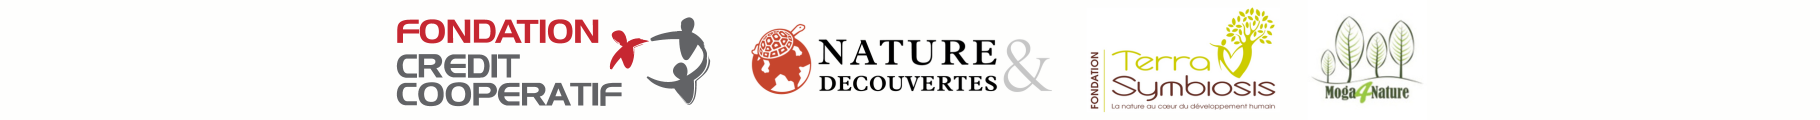 Logo des partenaires financiers : Fondation Crédit Coopératif - Nature&Découvertes - Fondation Terra Symbiosis Moga4Nature